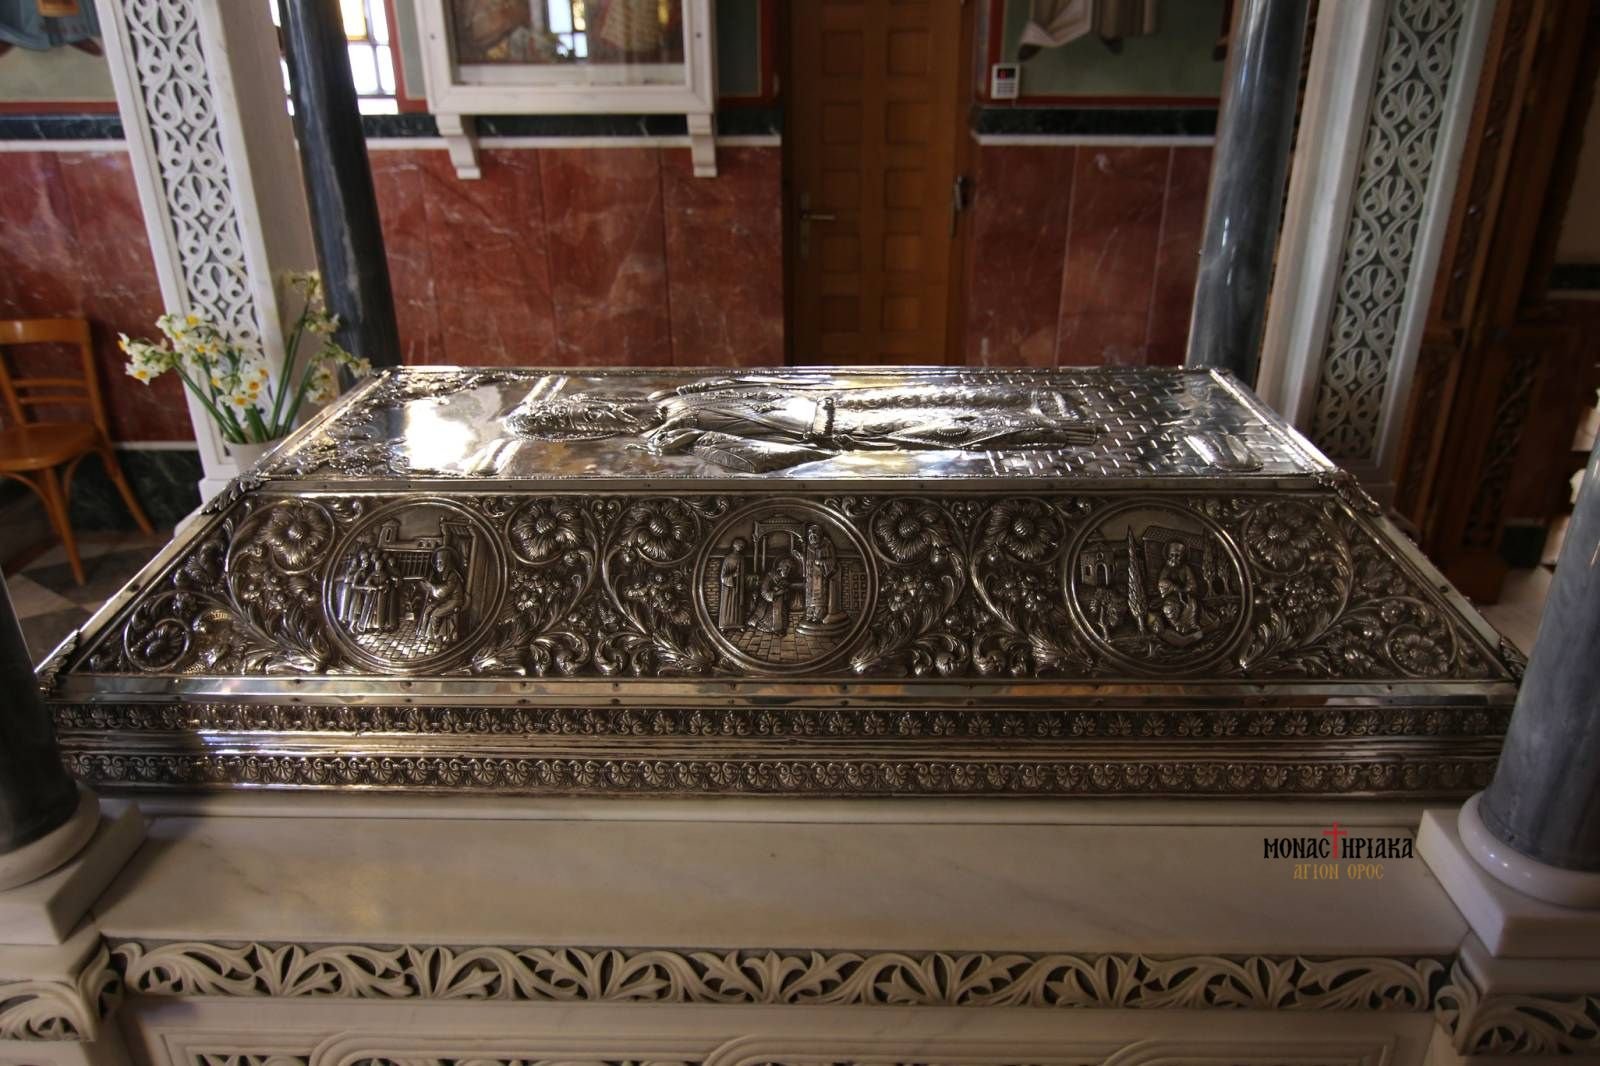 The Tomb of Saint Nektarios